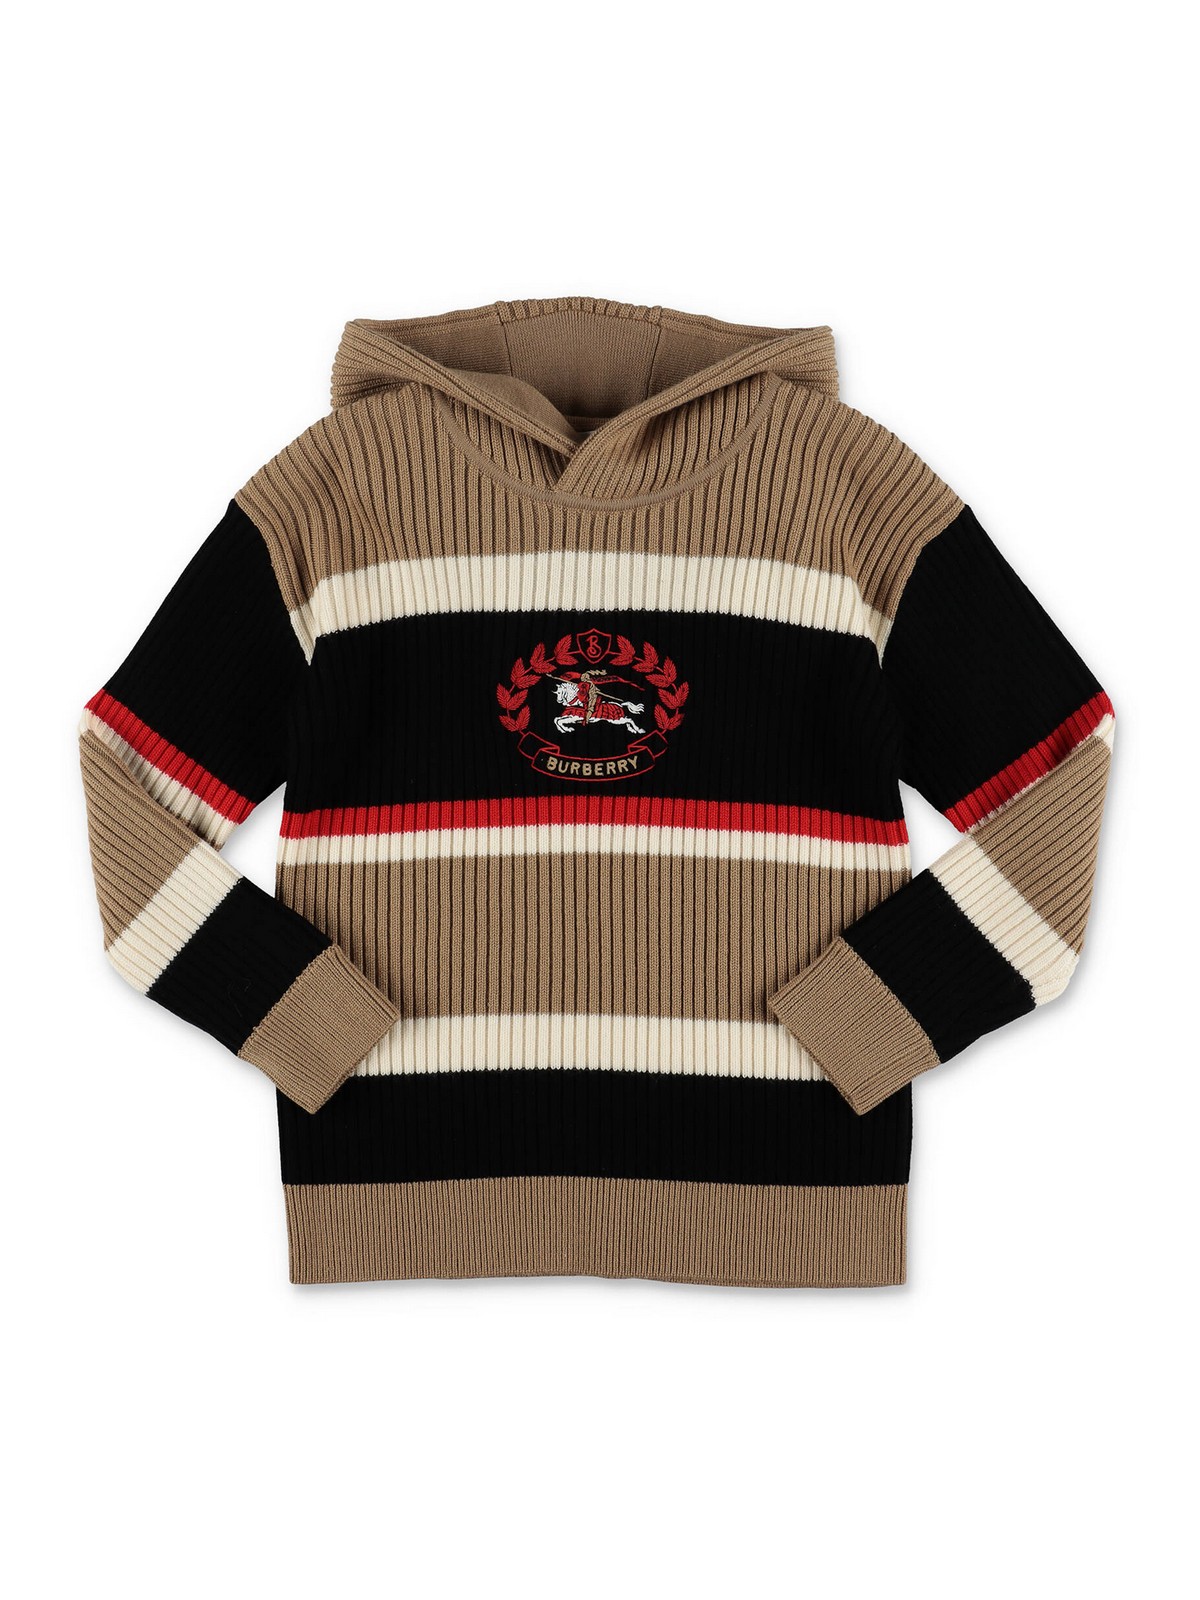 Burberry Kids' Wool Sweatshirt In Multicolour